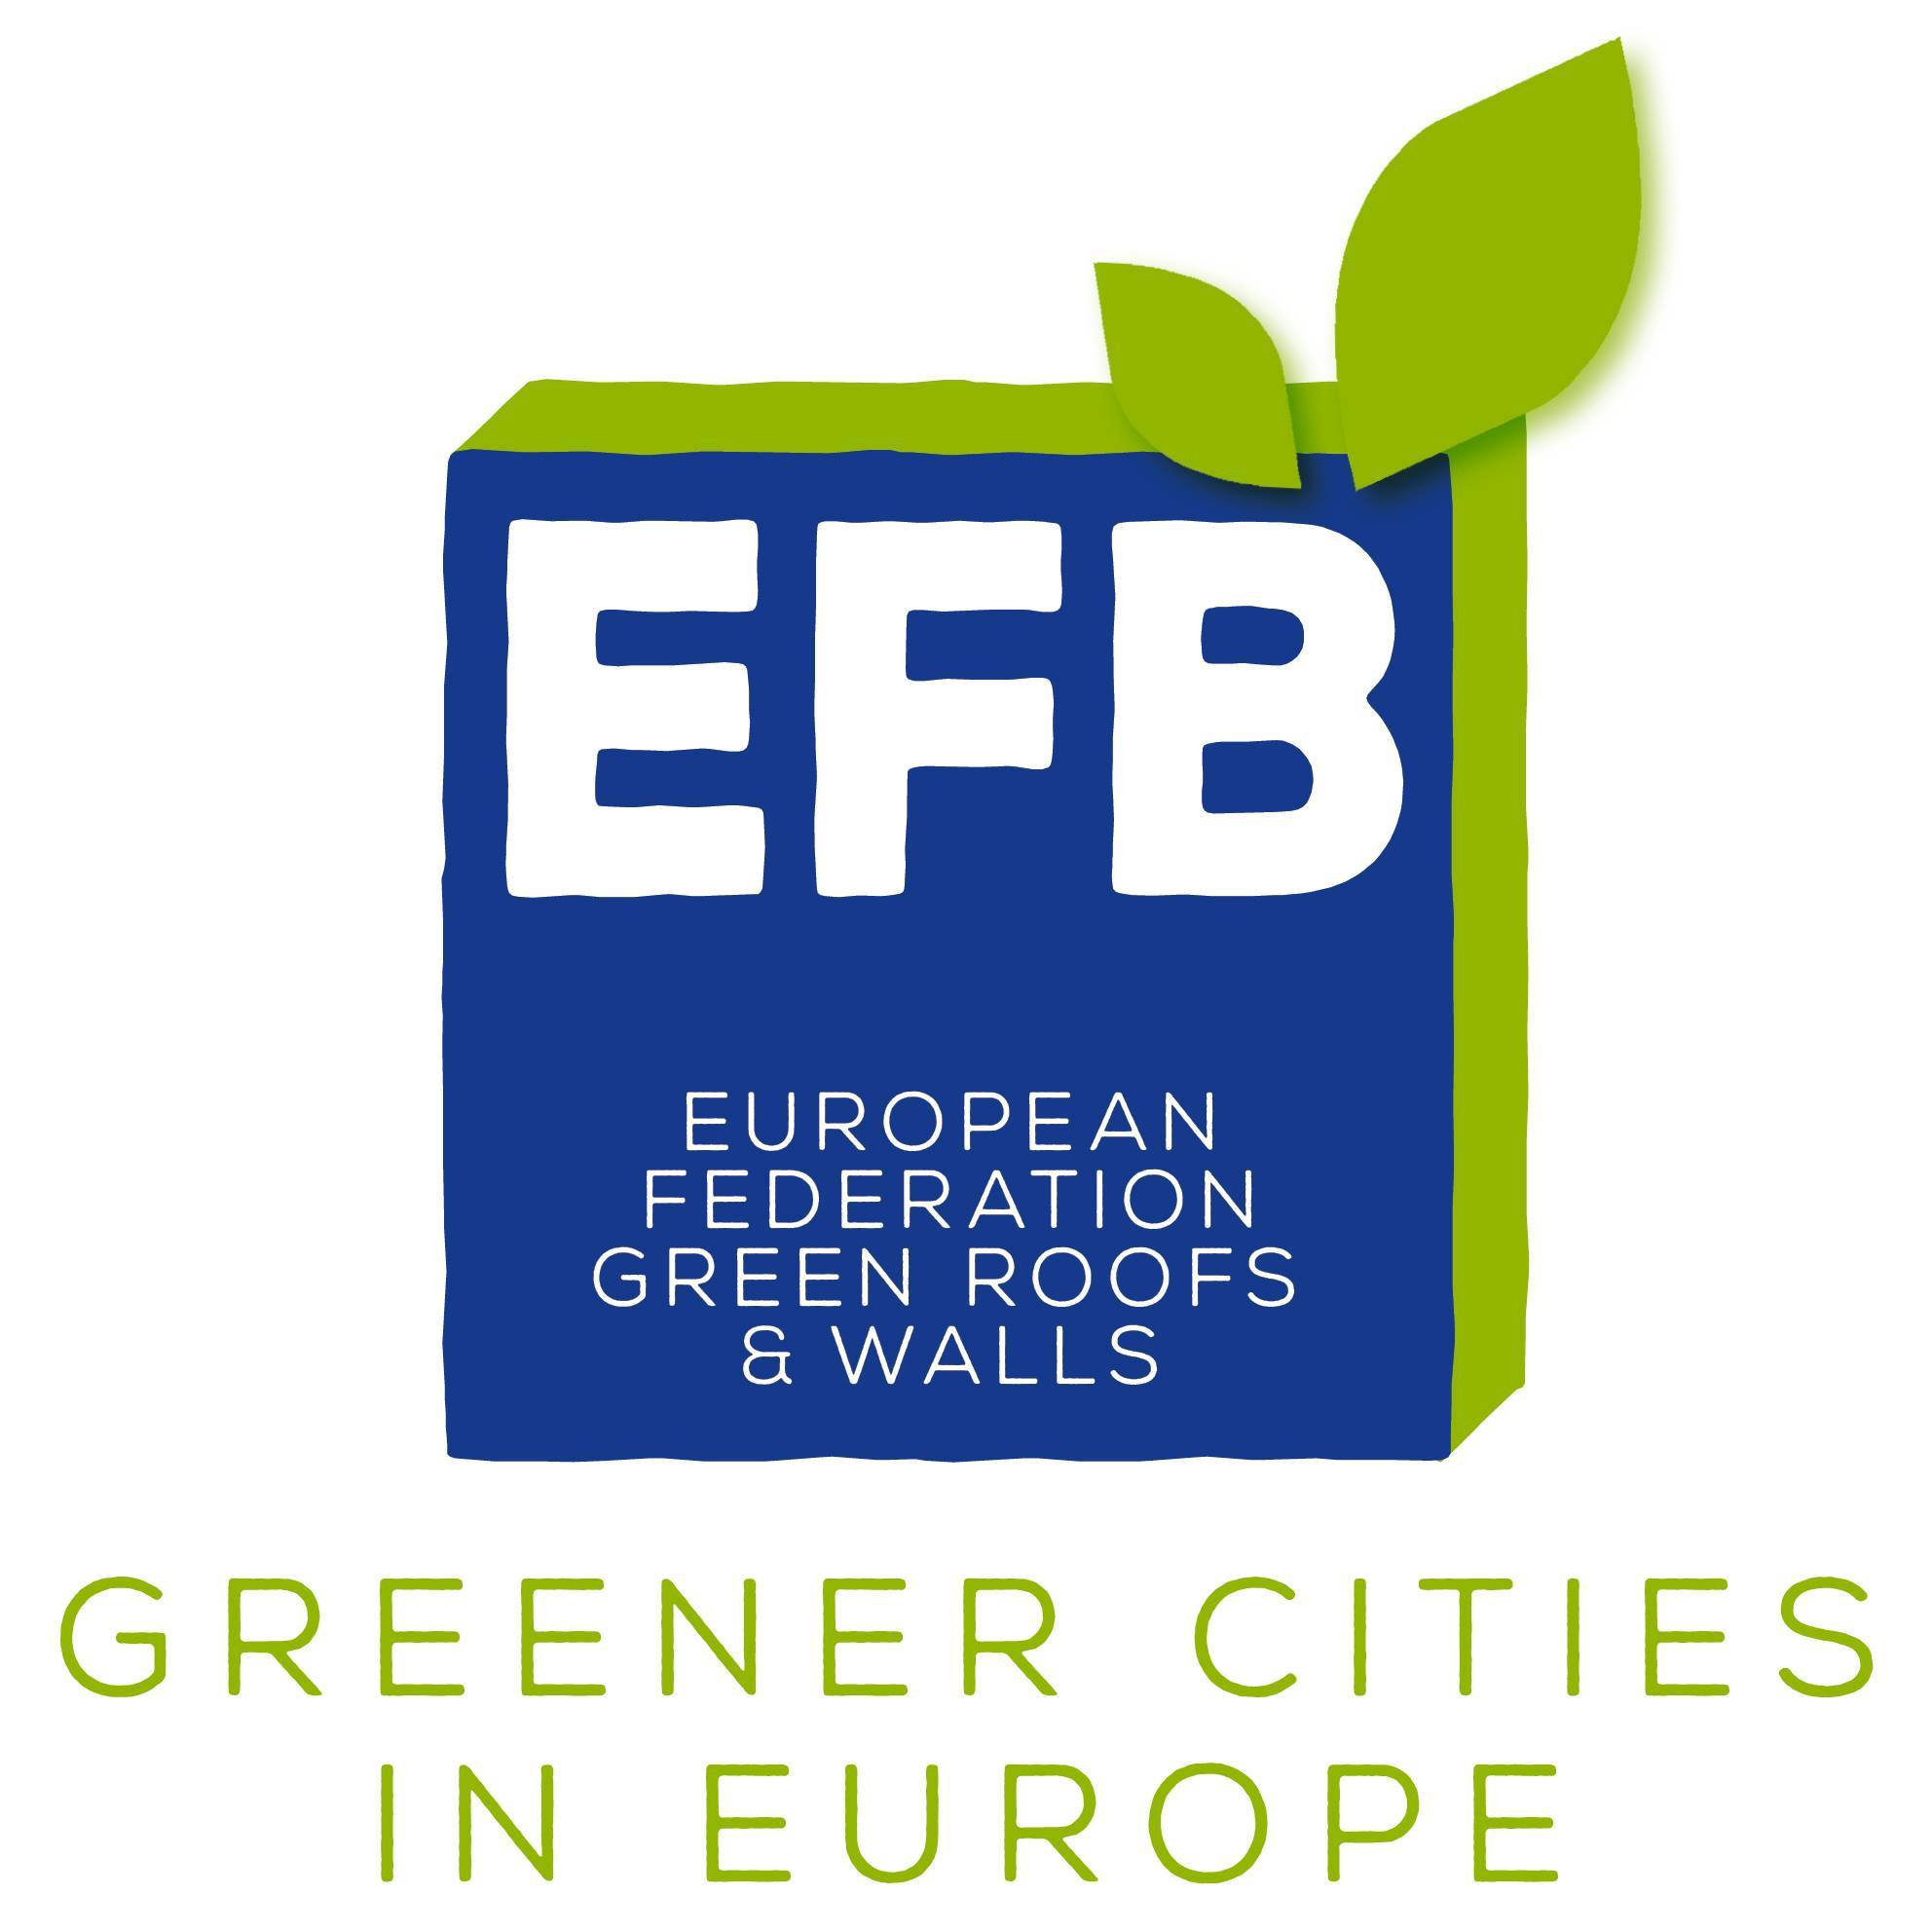 EFB - Federación Europea de Asociaciones de Techos y Muros Verdes